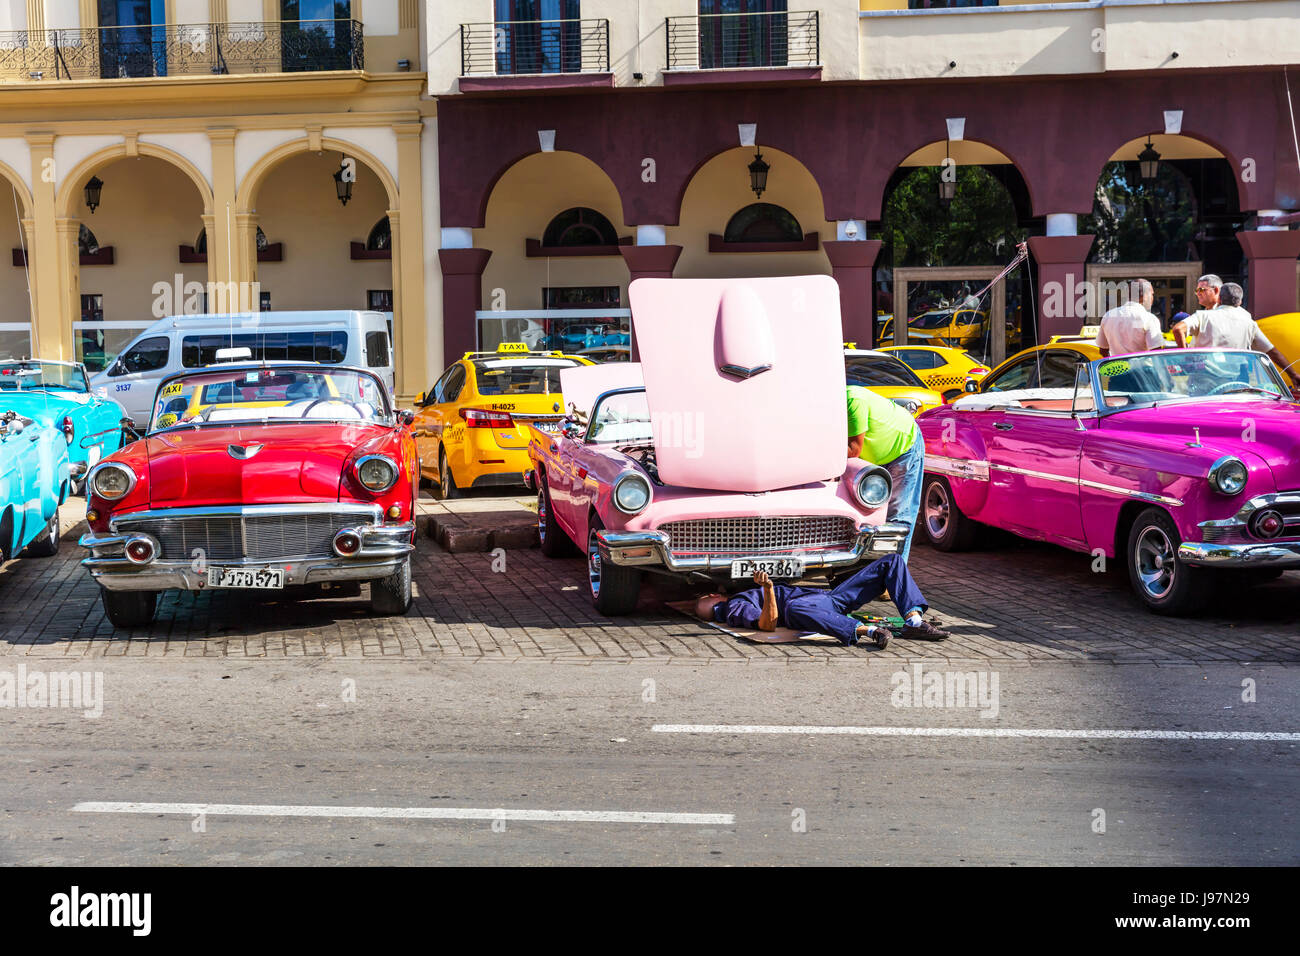 Repairing old classic pink Chevrolet car, Havana cuba, Cuban car, Bonnet up, car needing repair, car trouble, underneath car, mending car, Stock Photo